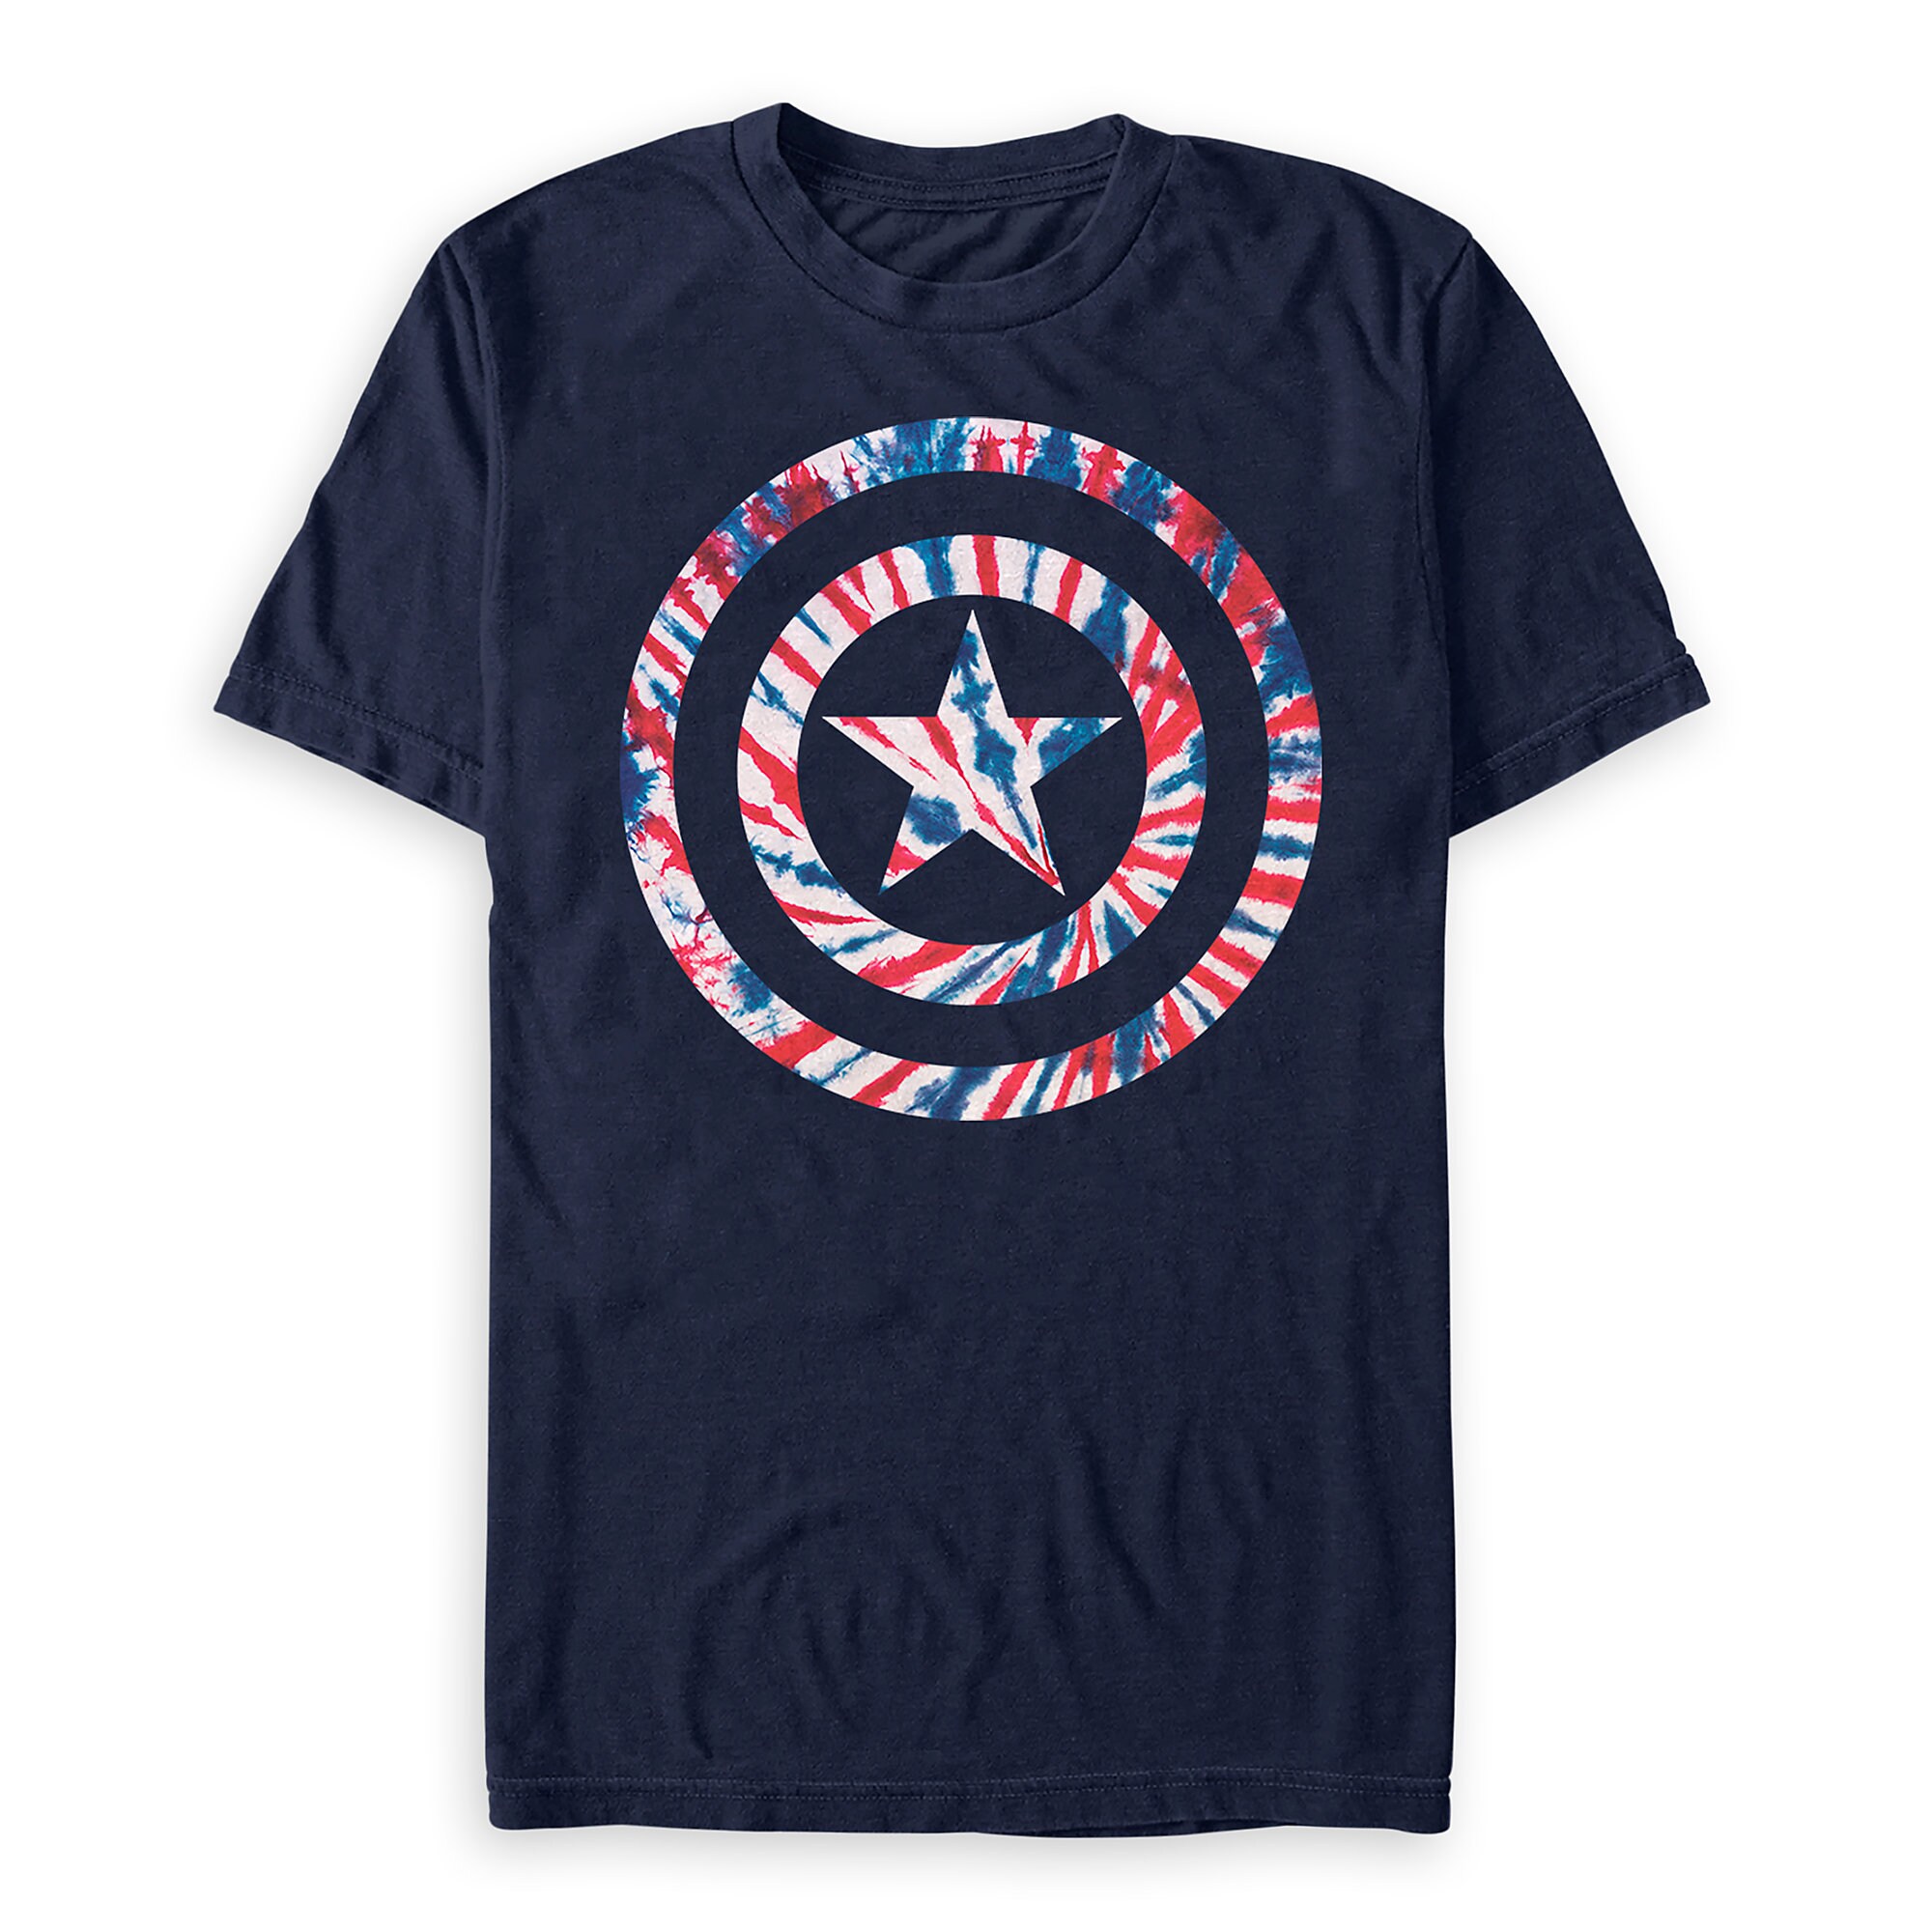 Captain America Tie-Dye T-Shirt for Men